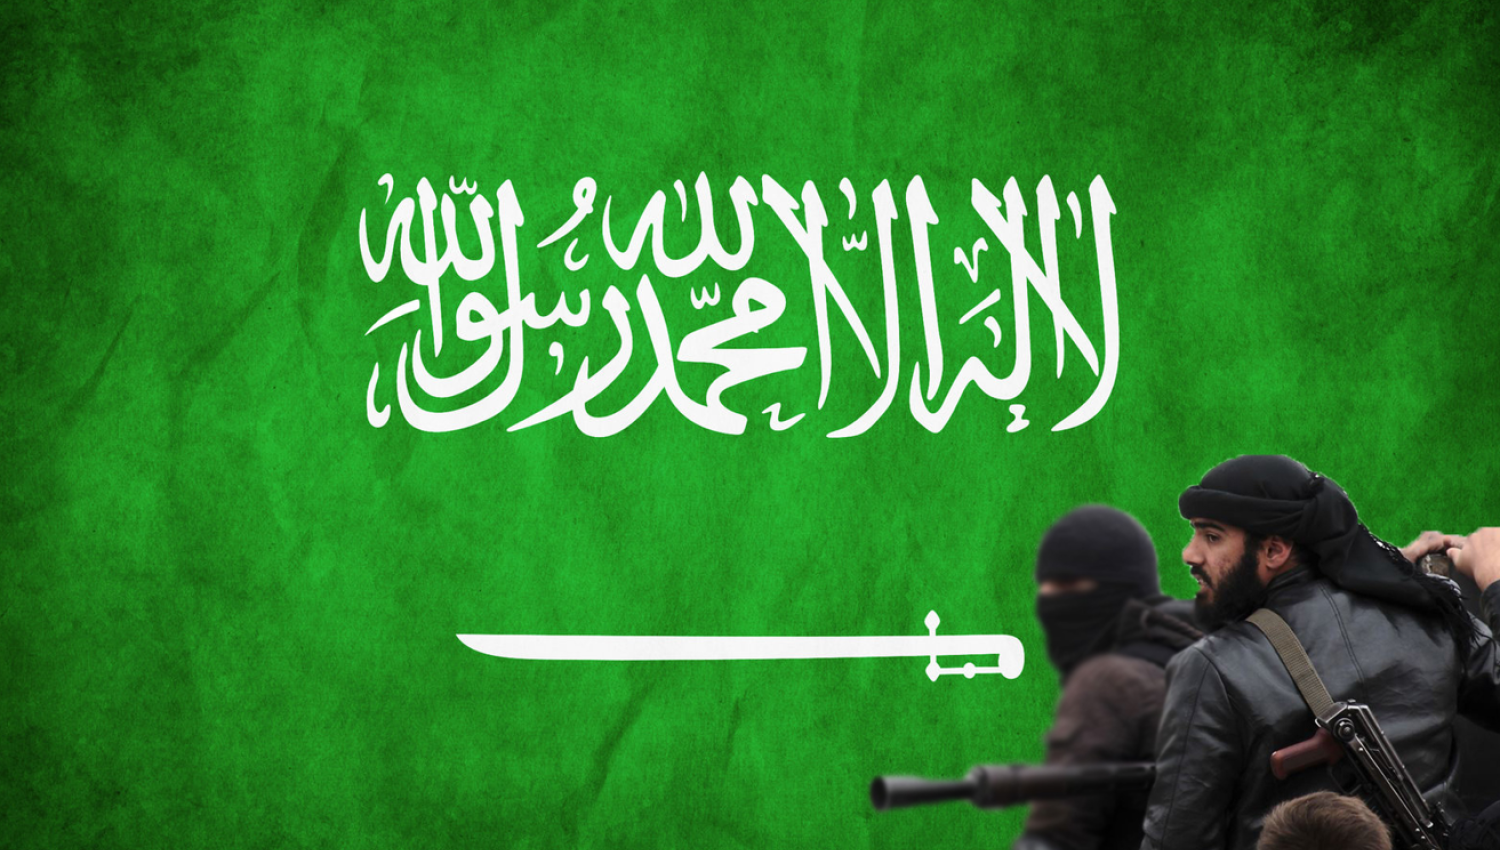 لماذا دعمت السعودية تنظيم داعش الوهابي؟